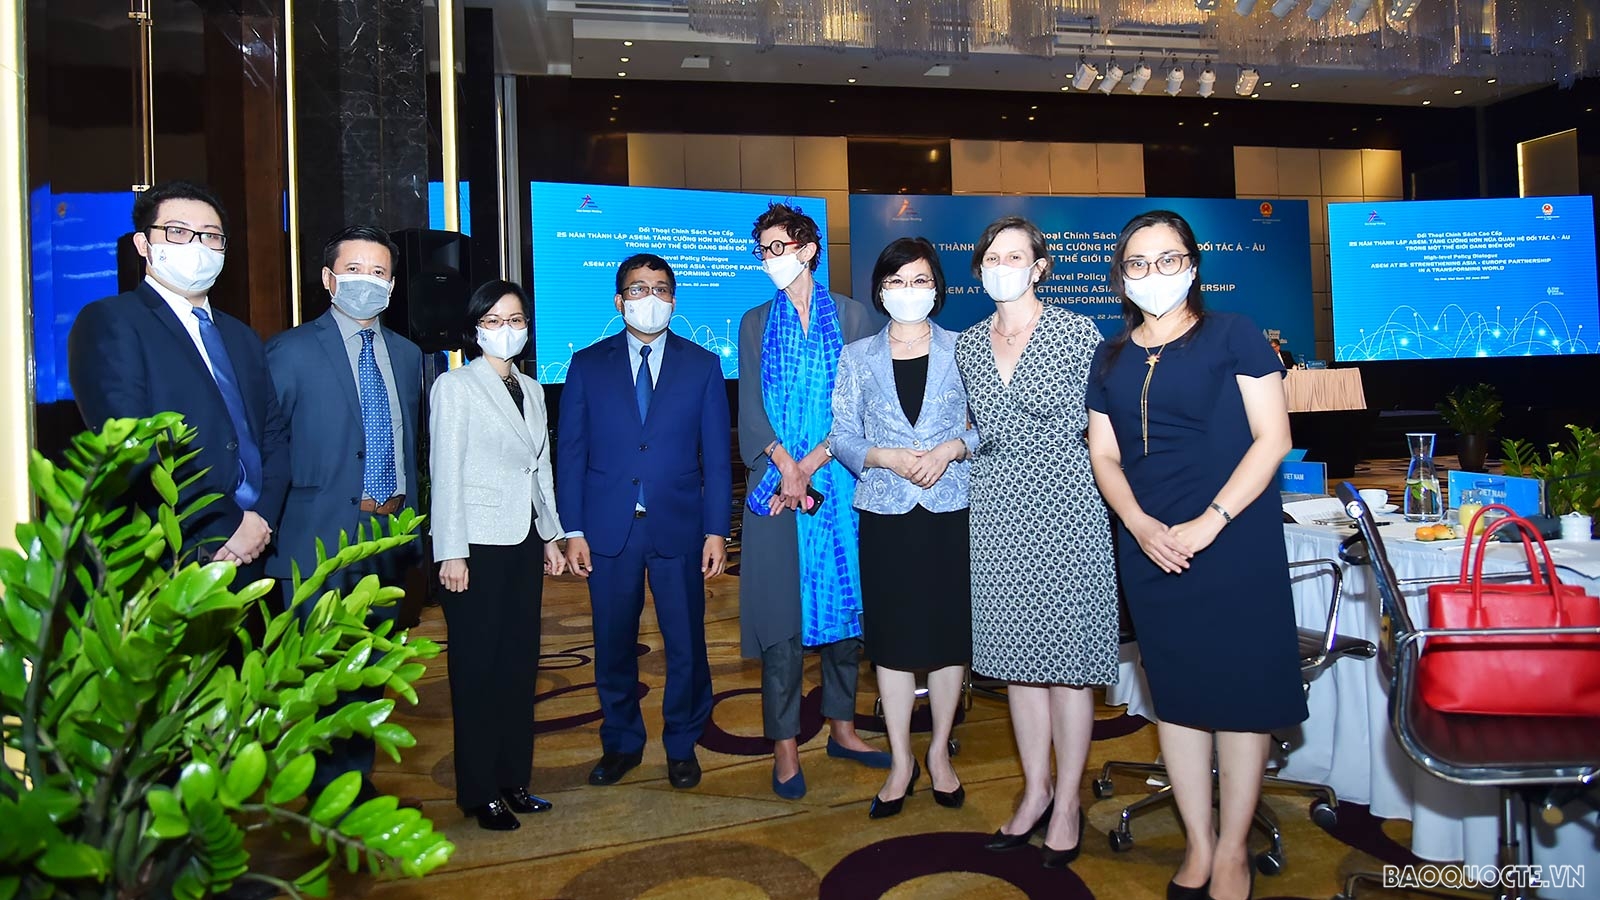 Kỷ niệm 25 năm thành lập ASEM: Khai mạc Đối thoại chính sách cao cấp Diễn đàn hợp tác Á-Âu tại Hà Nội